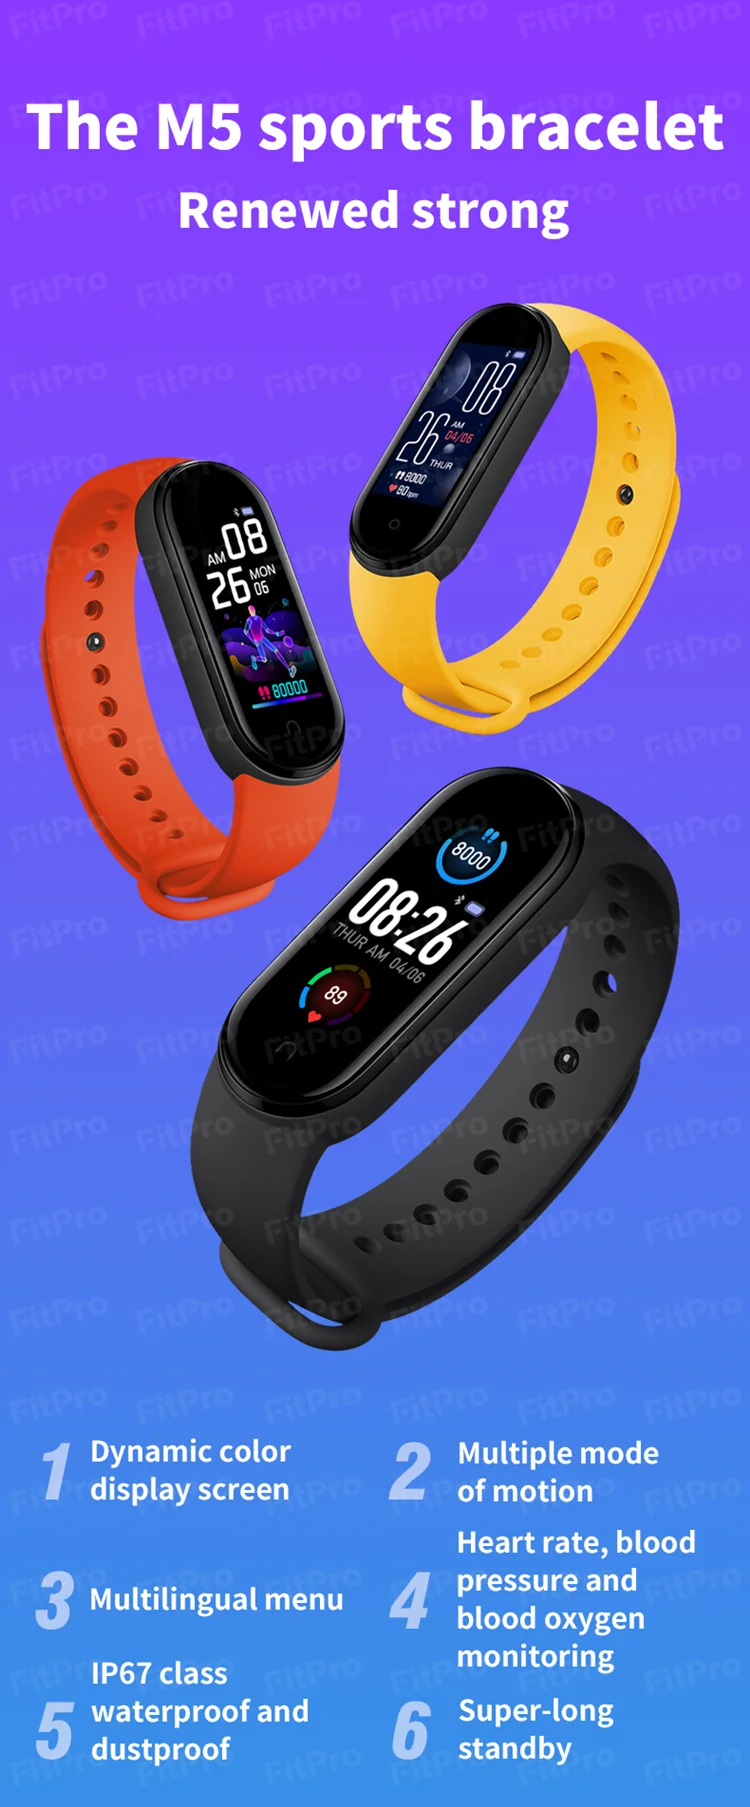 Xiaomi-bracelet connecté mi band 5, 2021, montre connectée, moniteur d'activité physique, nouveauté 2020